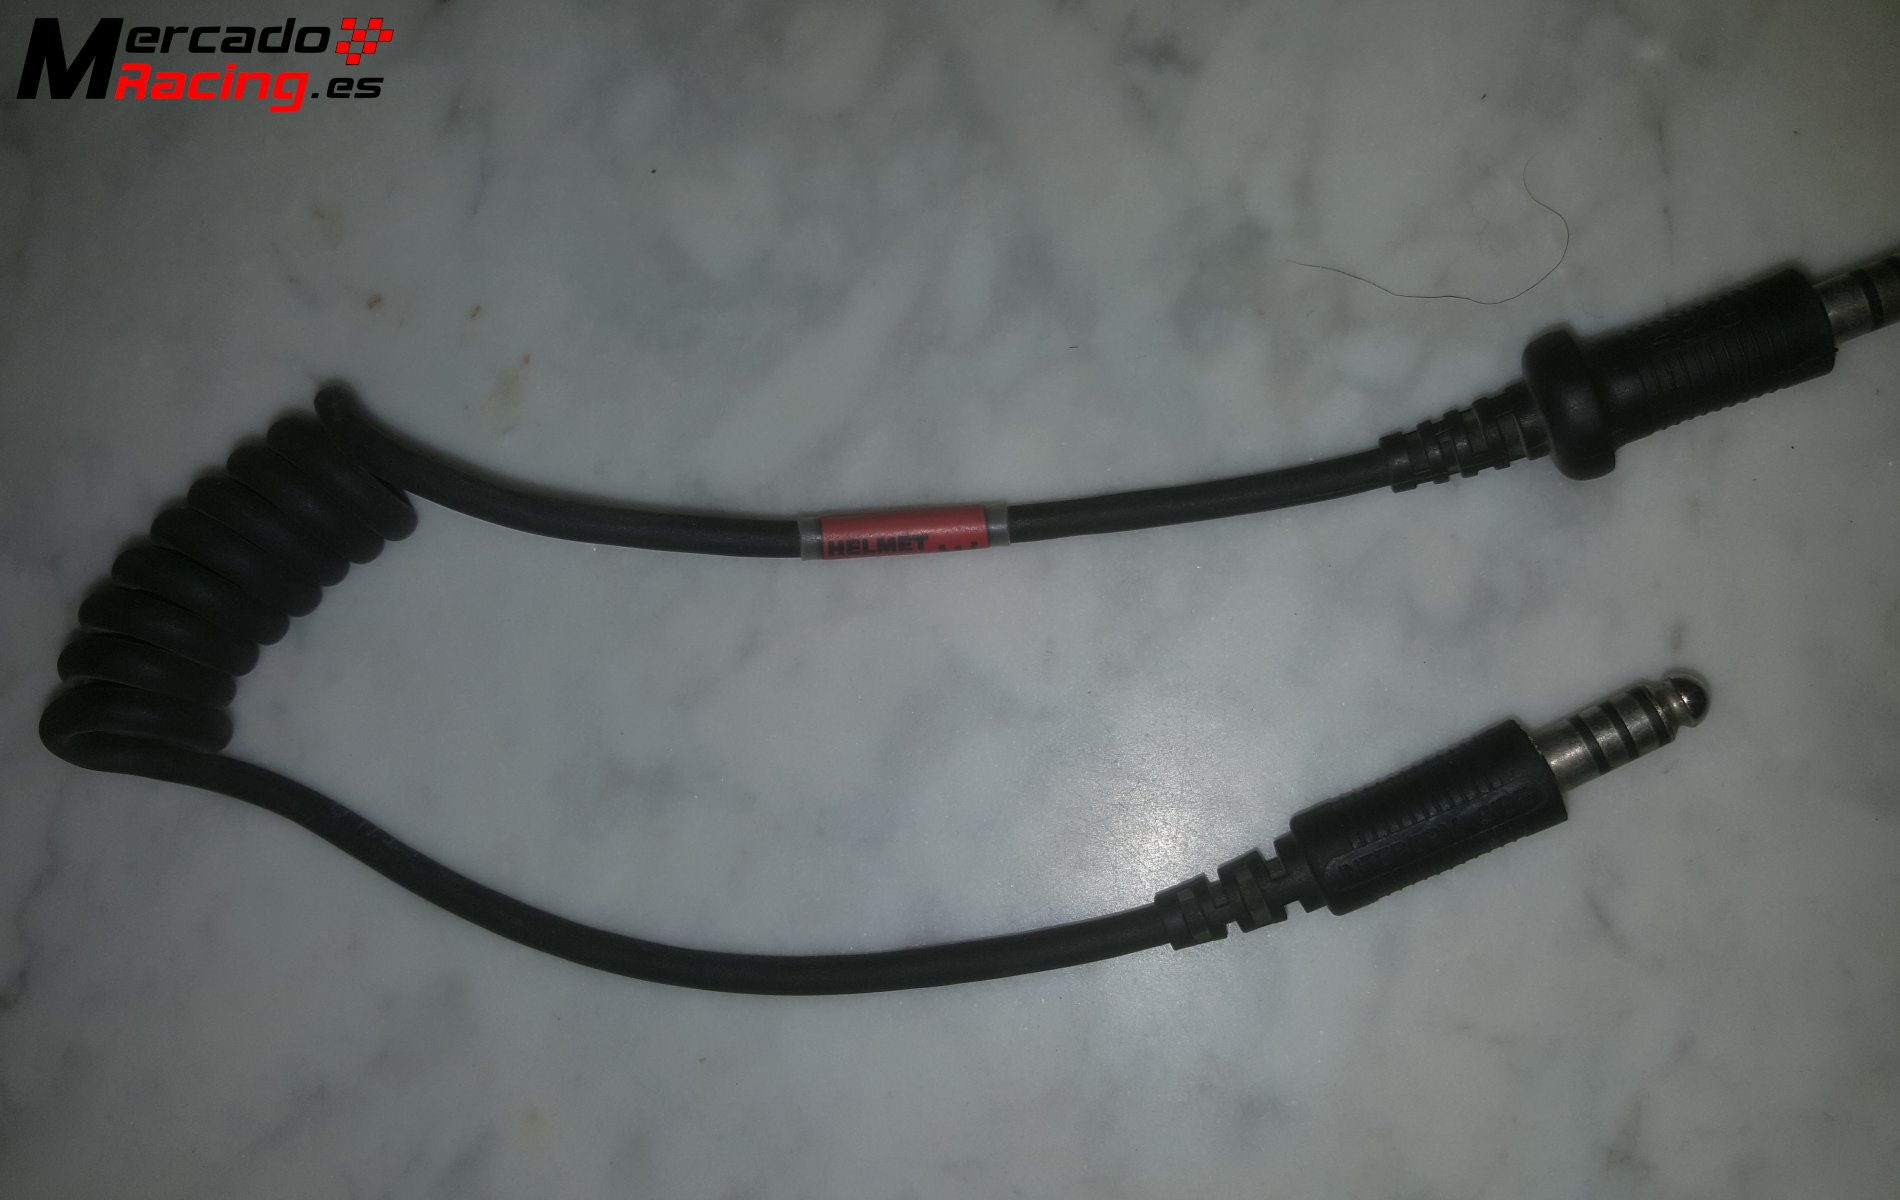 Cable adaptador stilo-peltor